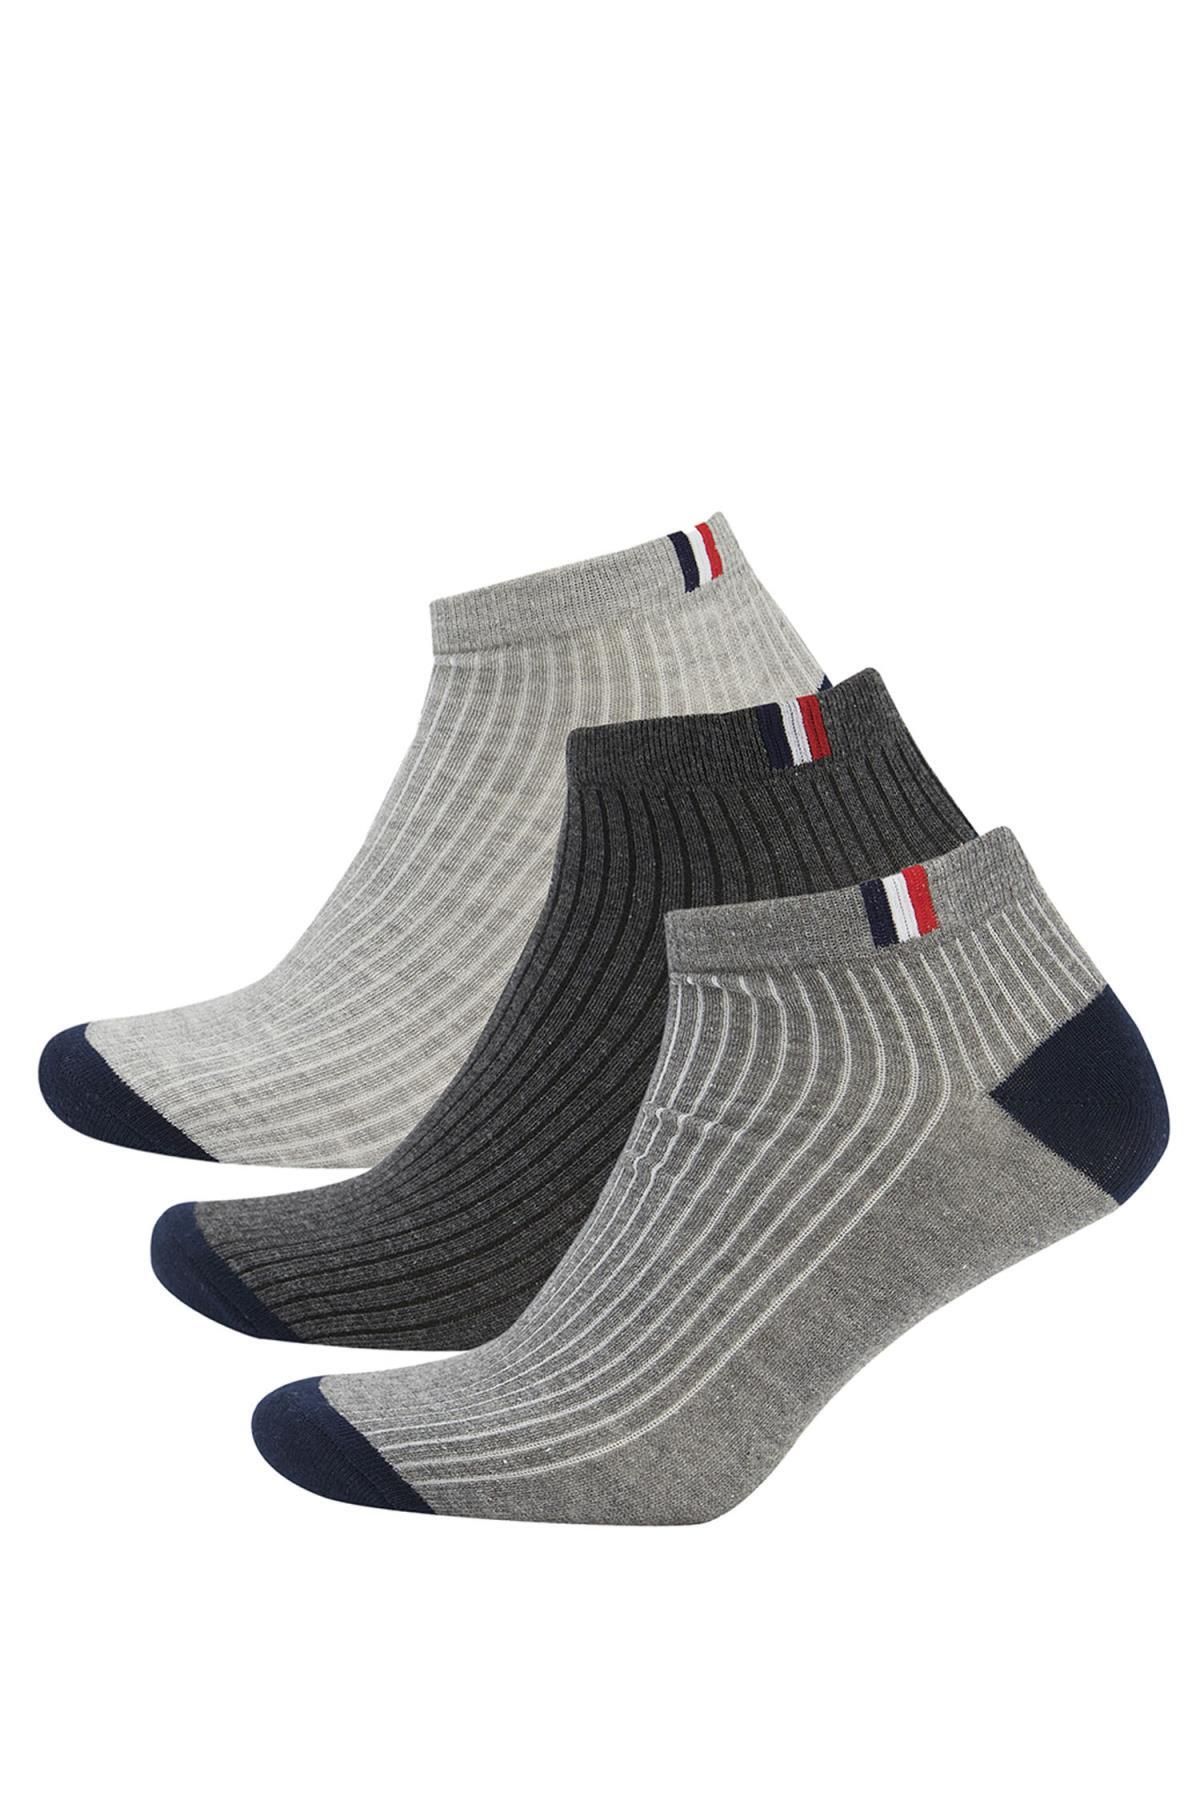 Defacto Erkek 3lü Pamuklu Patik Çorap T7241azns